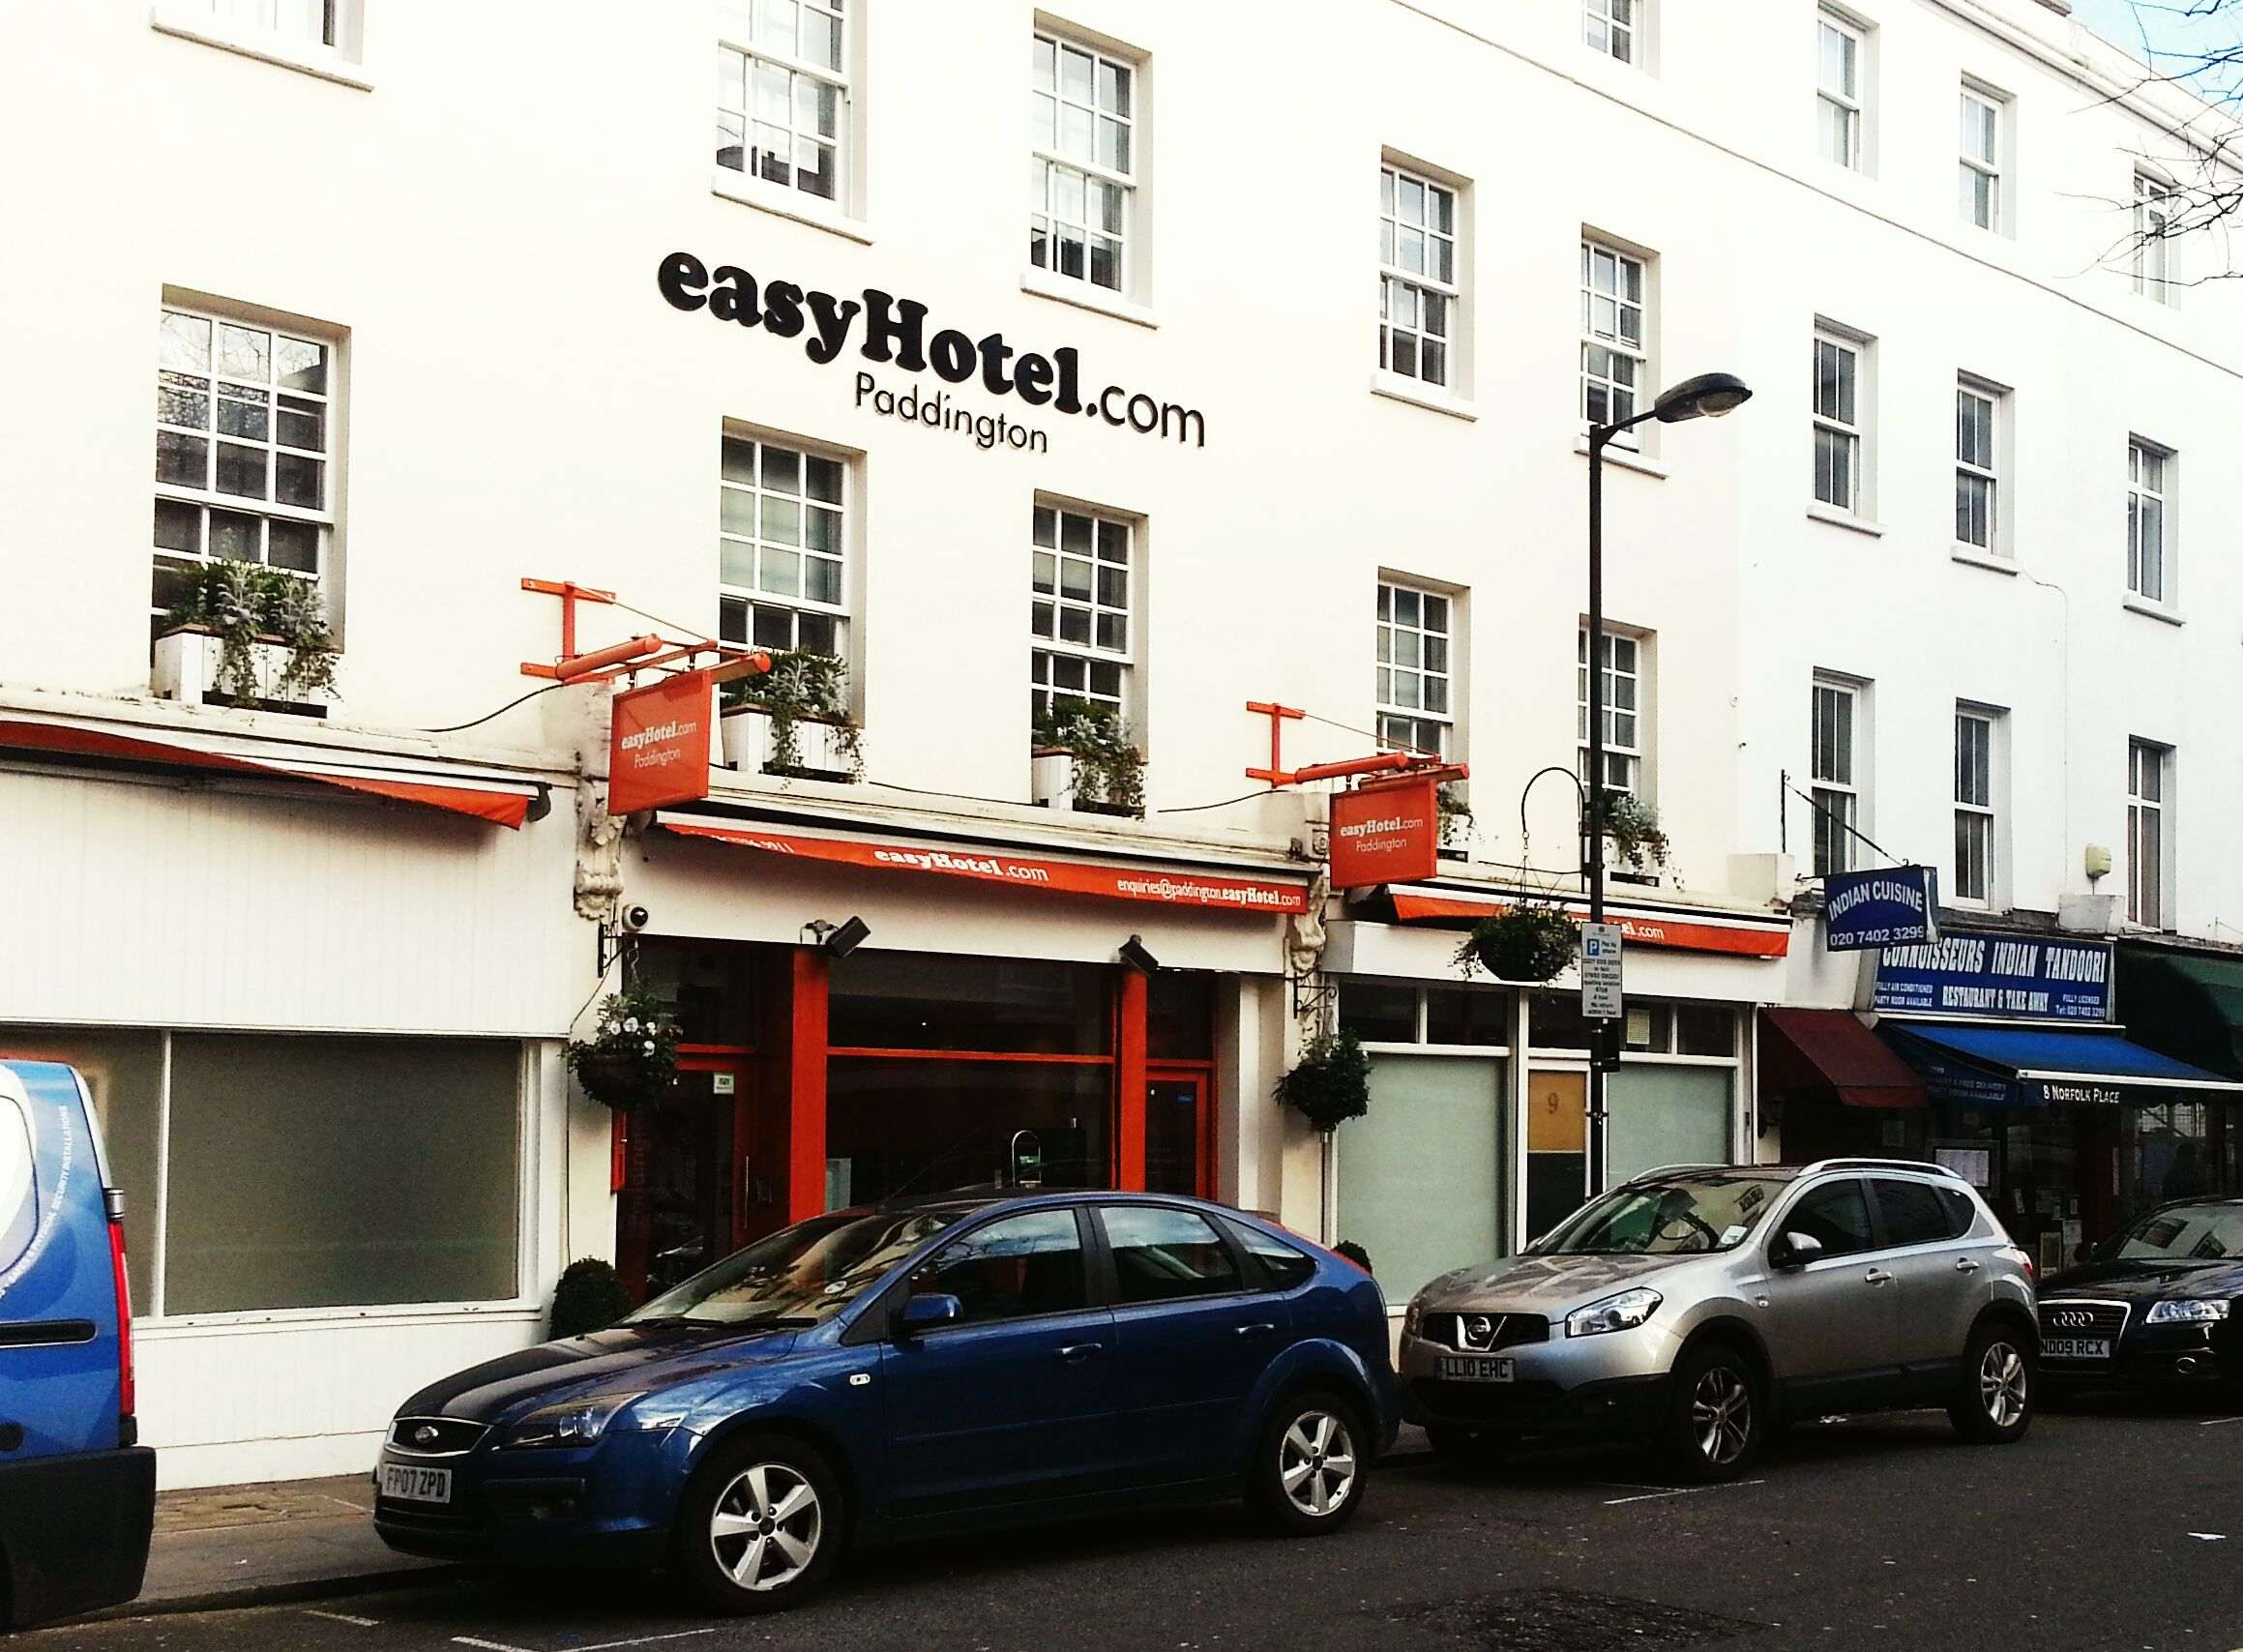 EasyHotel invertirà 15 milions en un hotel a l'Hospitalet